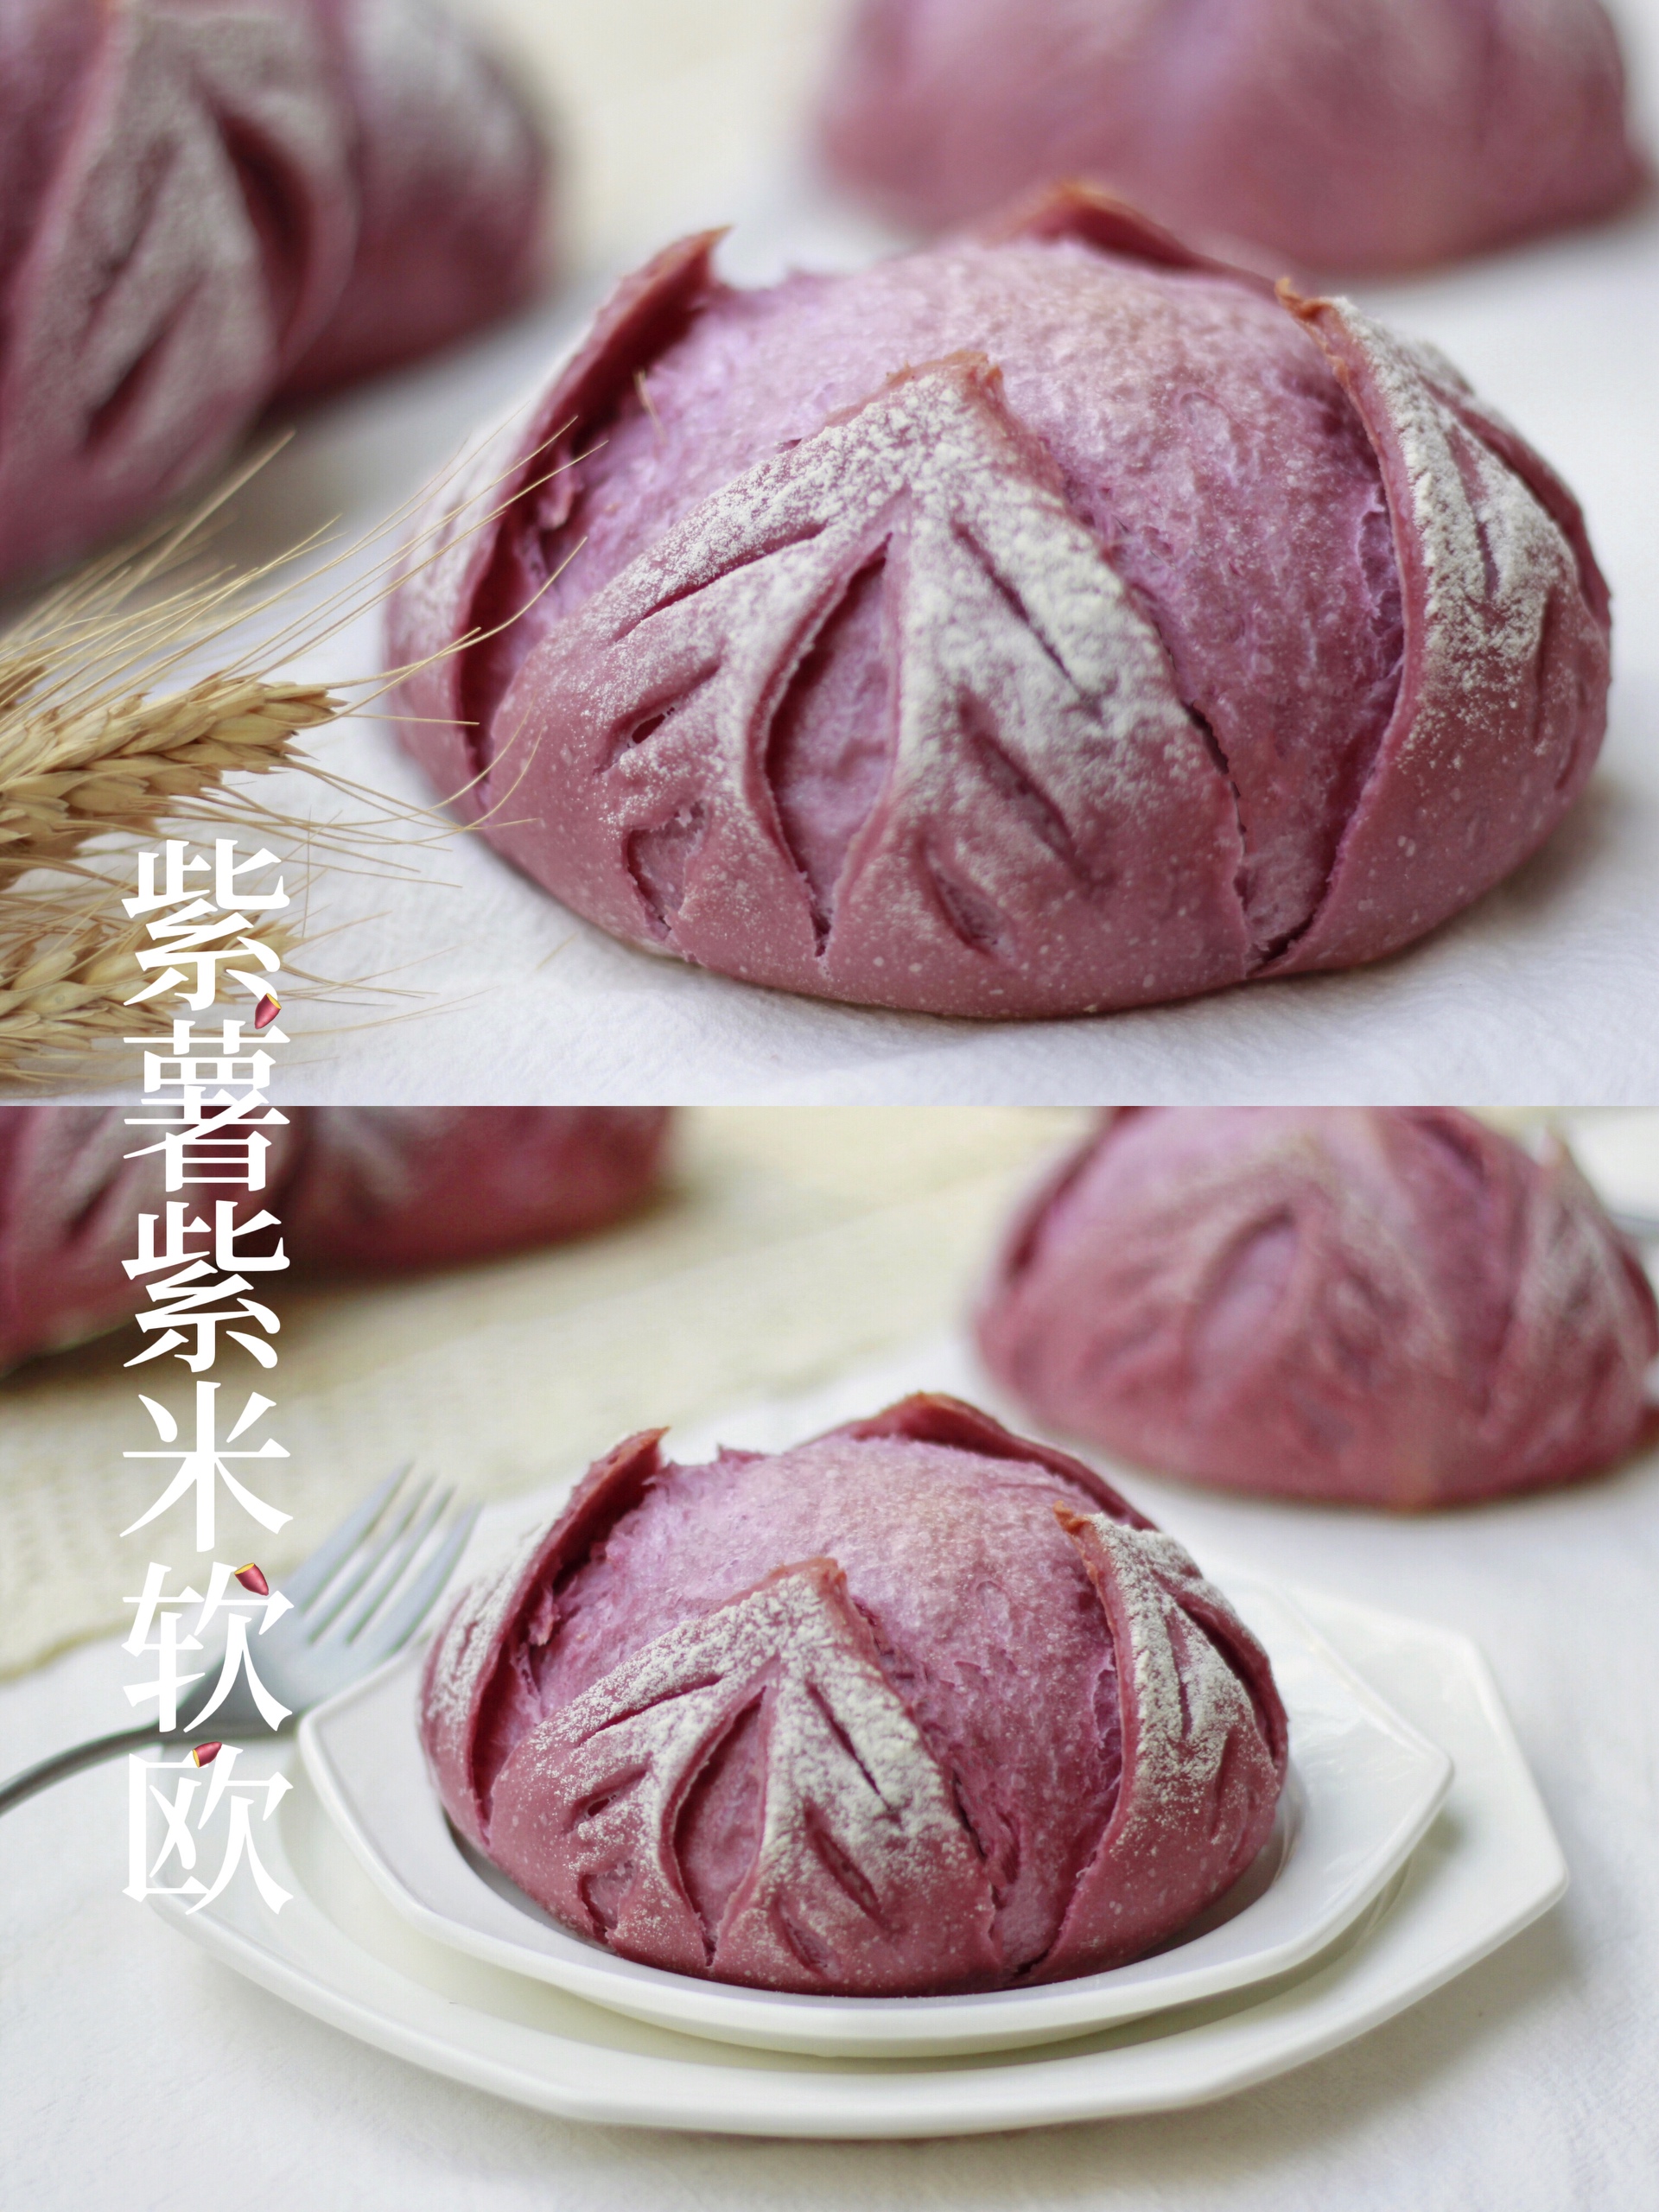 紫薯紫米馅花朵软欧的做法